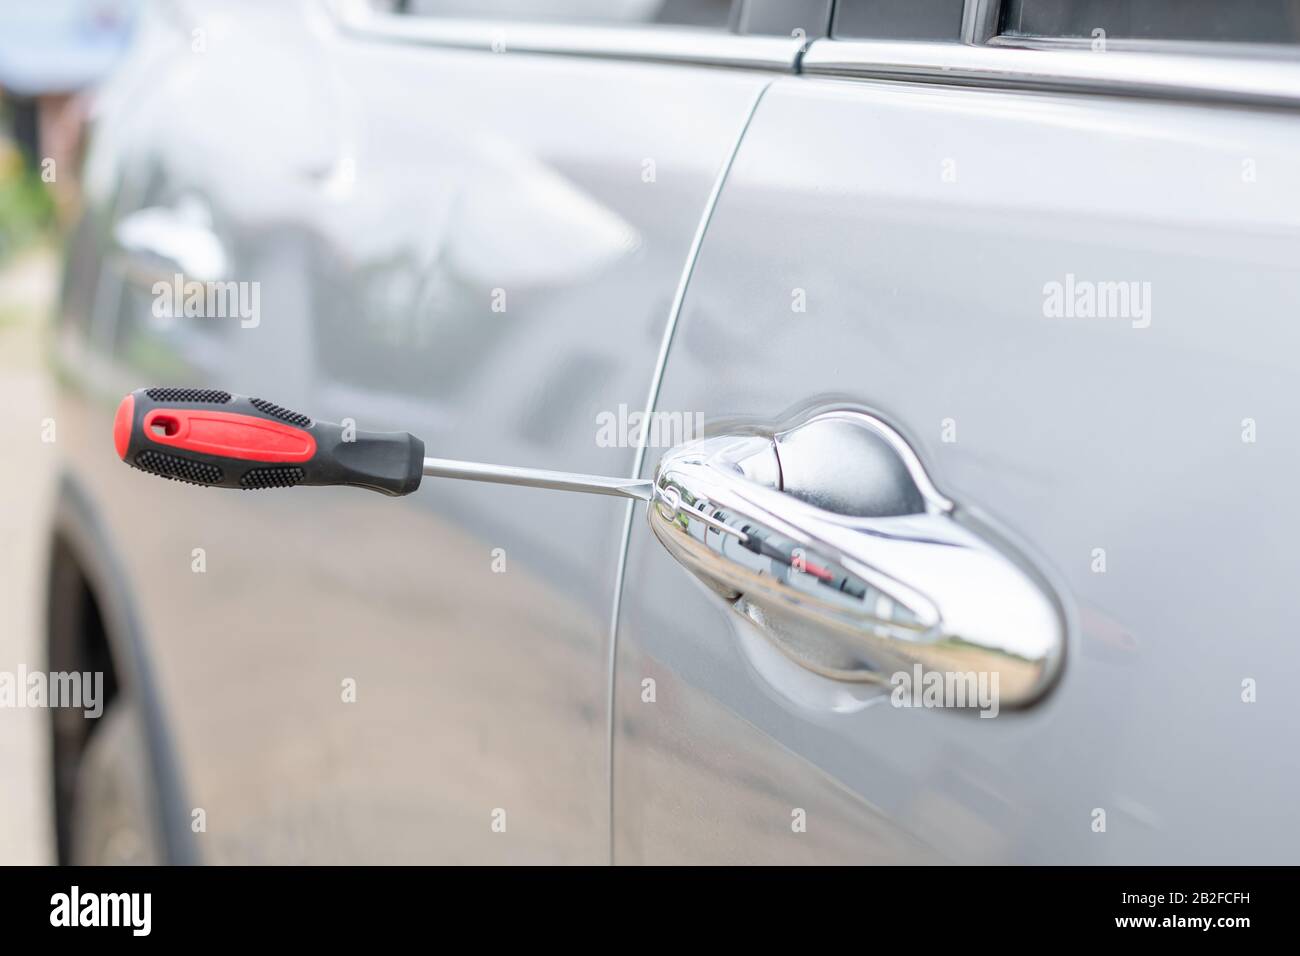 Un technicien automobile porte des gants blancs et utilise un tournevis  pour fixer, réparer ou ouvrir la porte d'une voiture moderne Photo Stock -  Alamy